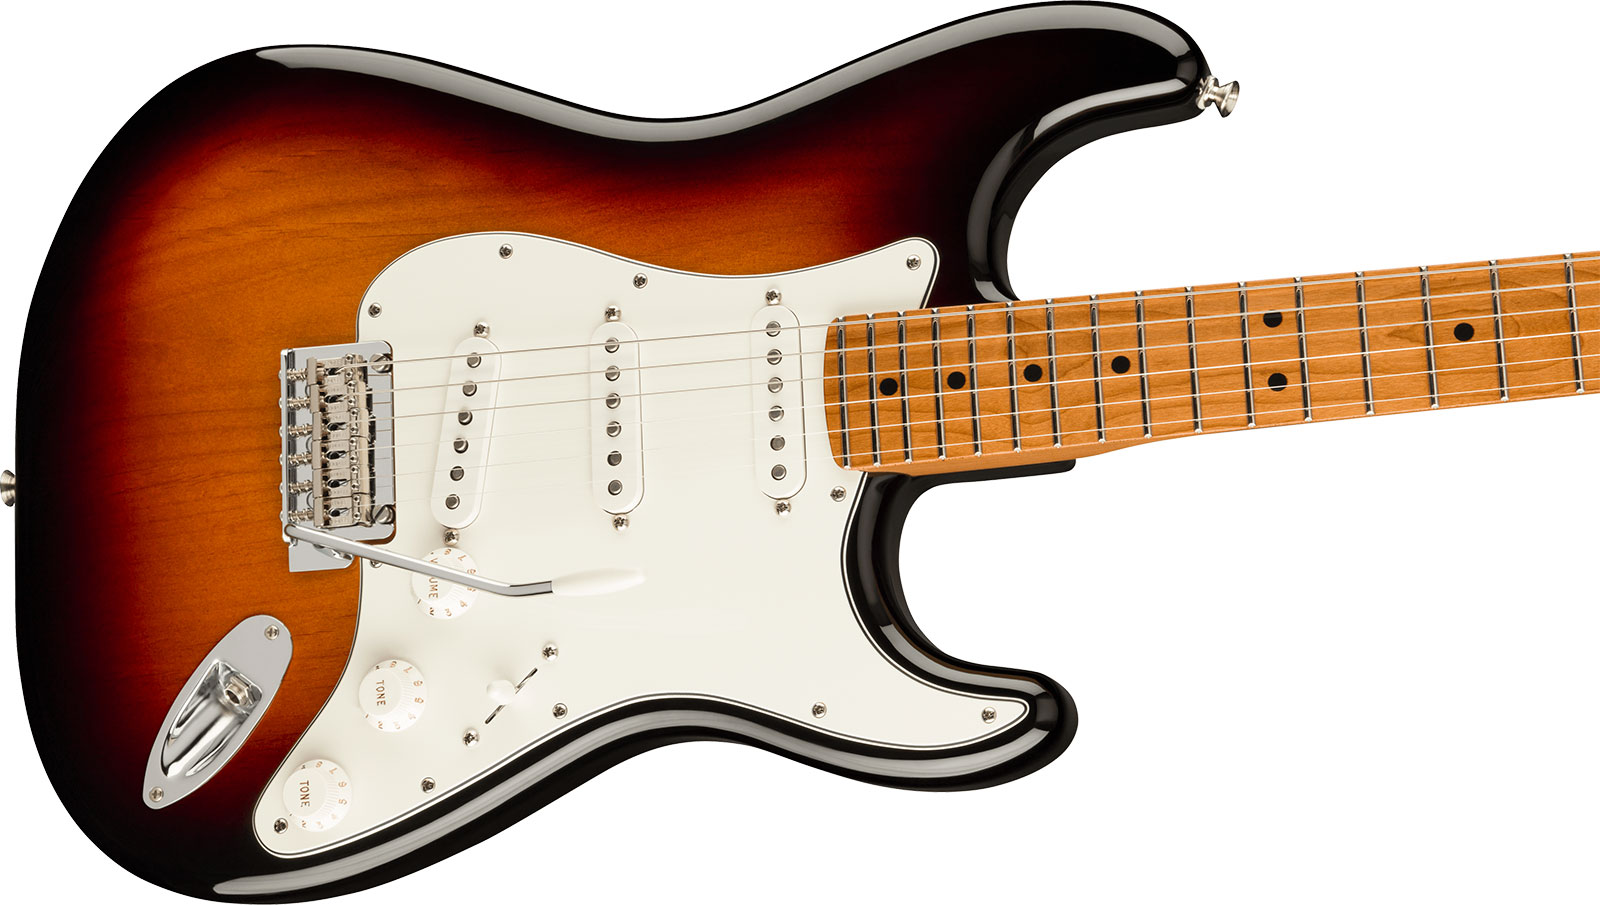 Fender Strat Player Roasted Maple Neck Ltd Mex 3s Trem Mn - 3 Color Sunburst - Guitare Électrique Forme Str - Variation 2